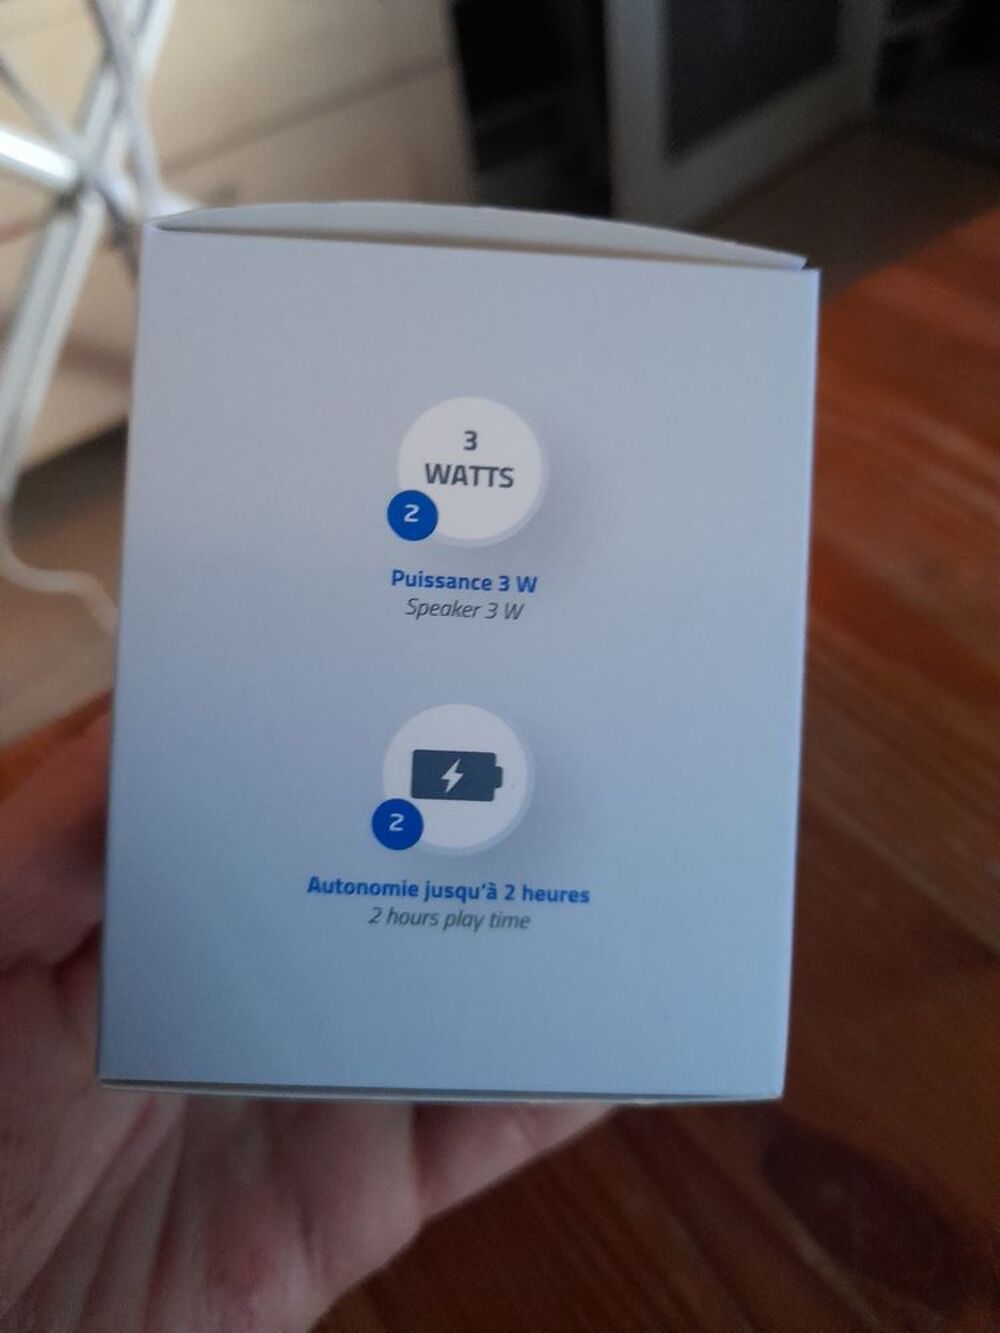 Enceinte compatible Bluetooth LIVOO
NEUVE emball&eacute;e
Audio et hifi